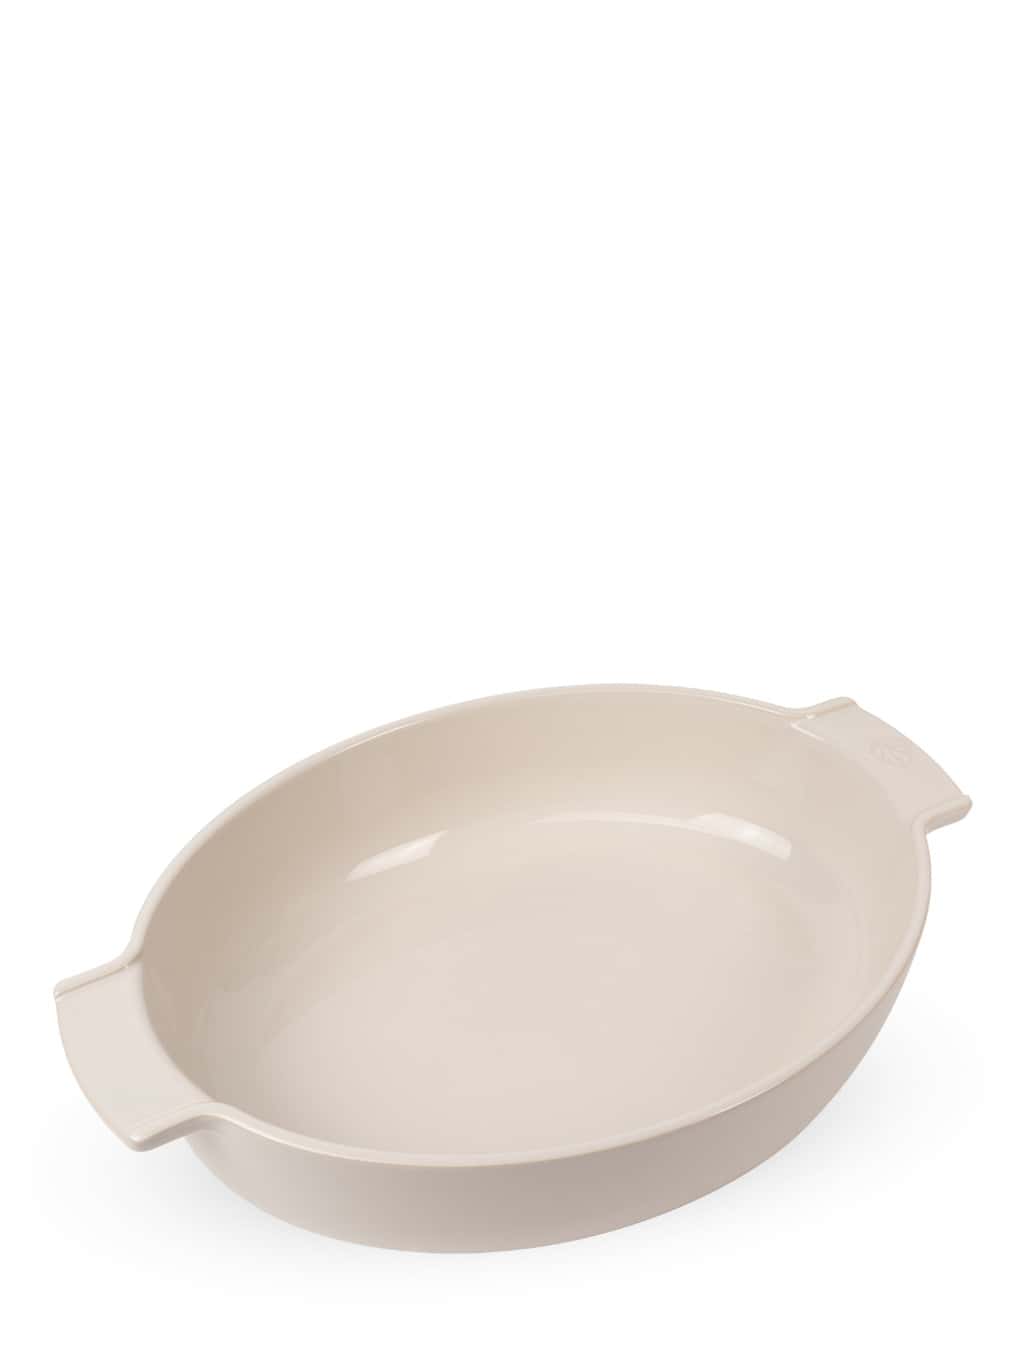 Image of Appolia Ecru Ceramic Oval Baking Dish, 40cm Appolia